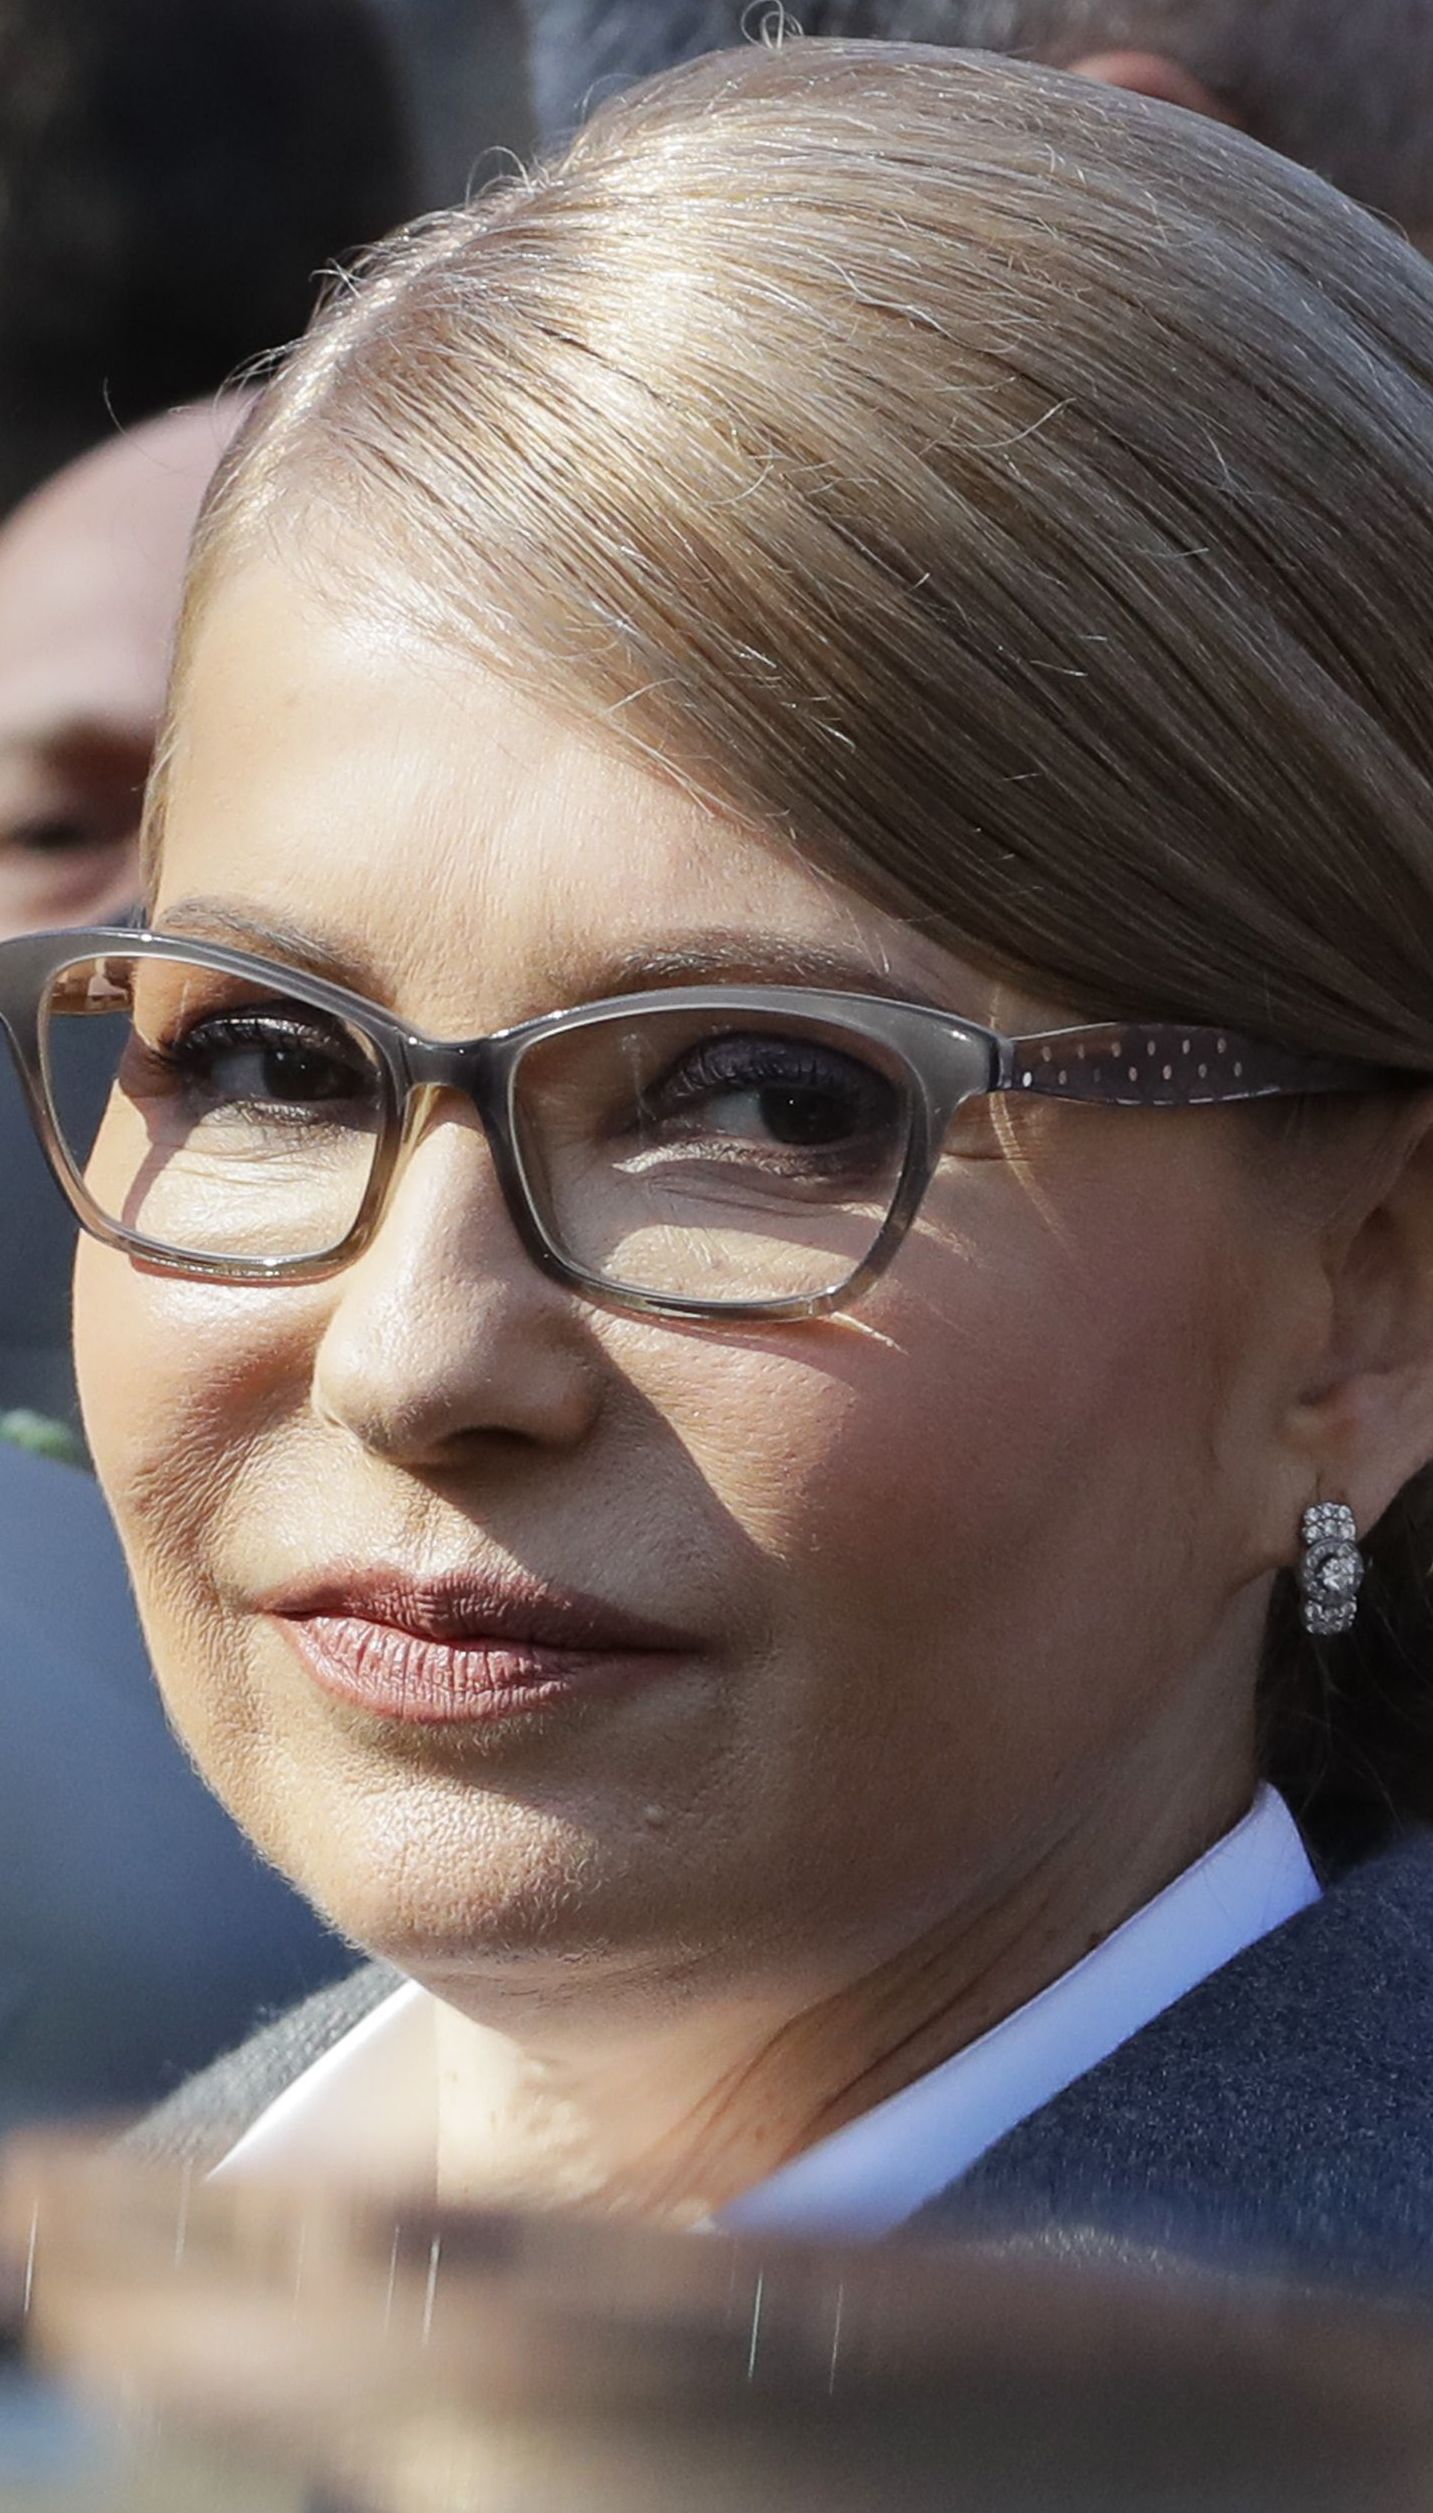 "Треба думати, як жити далі". Тимошенко записала відеозвернення – переможець другого туру для неї очевидний